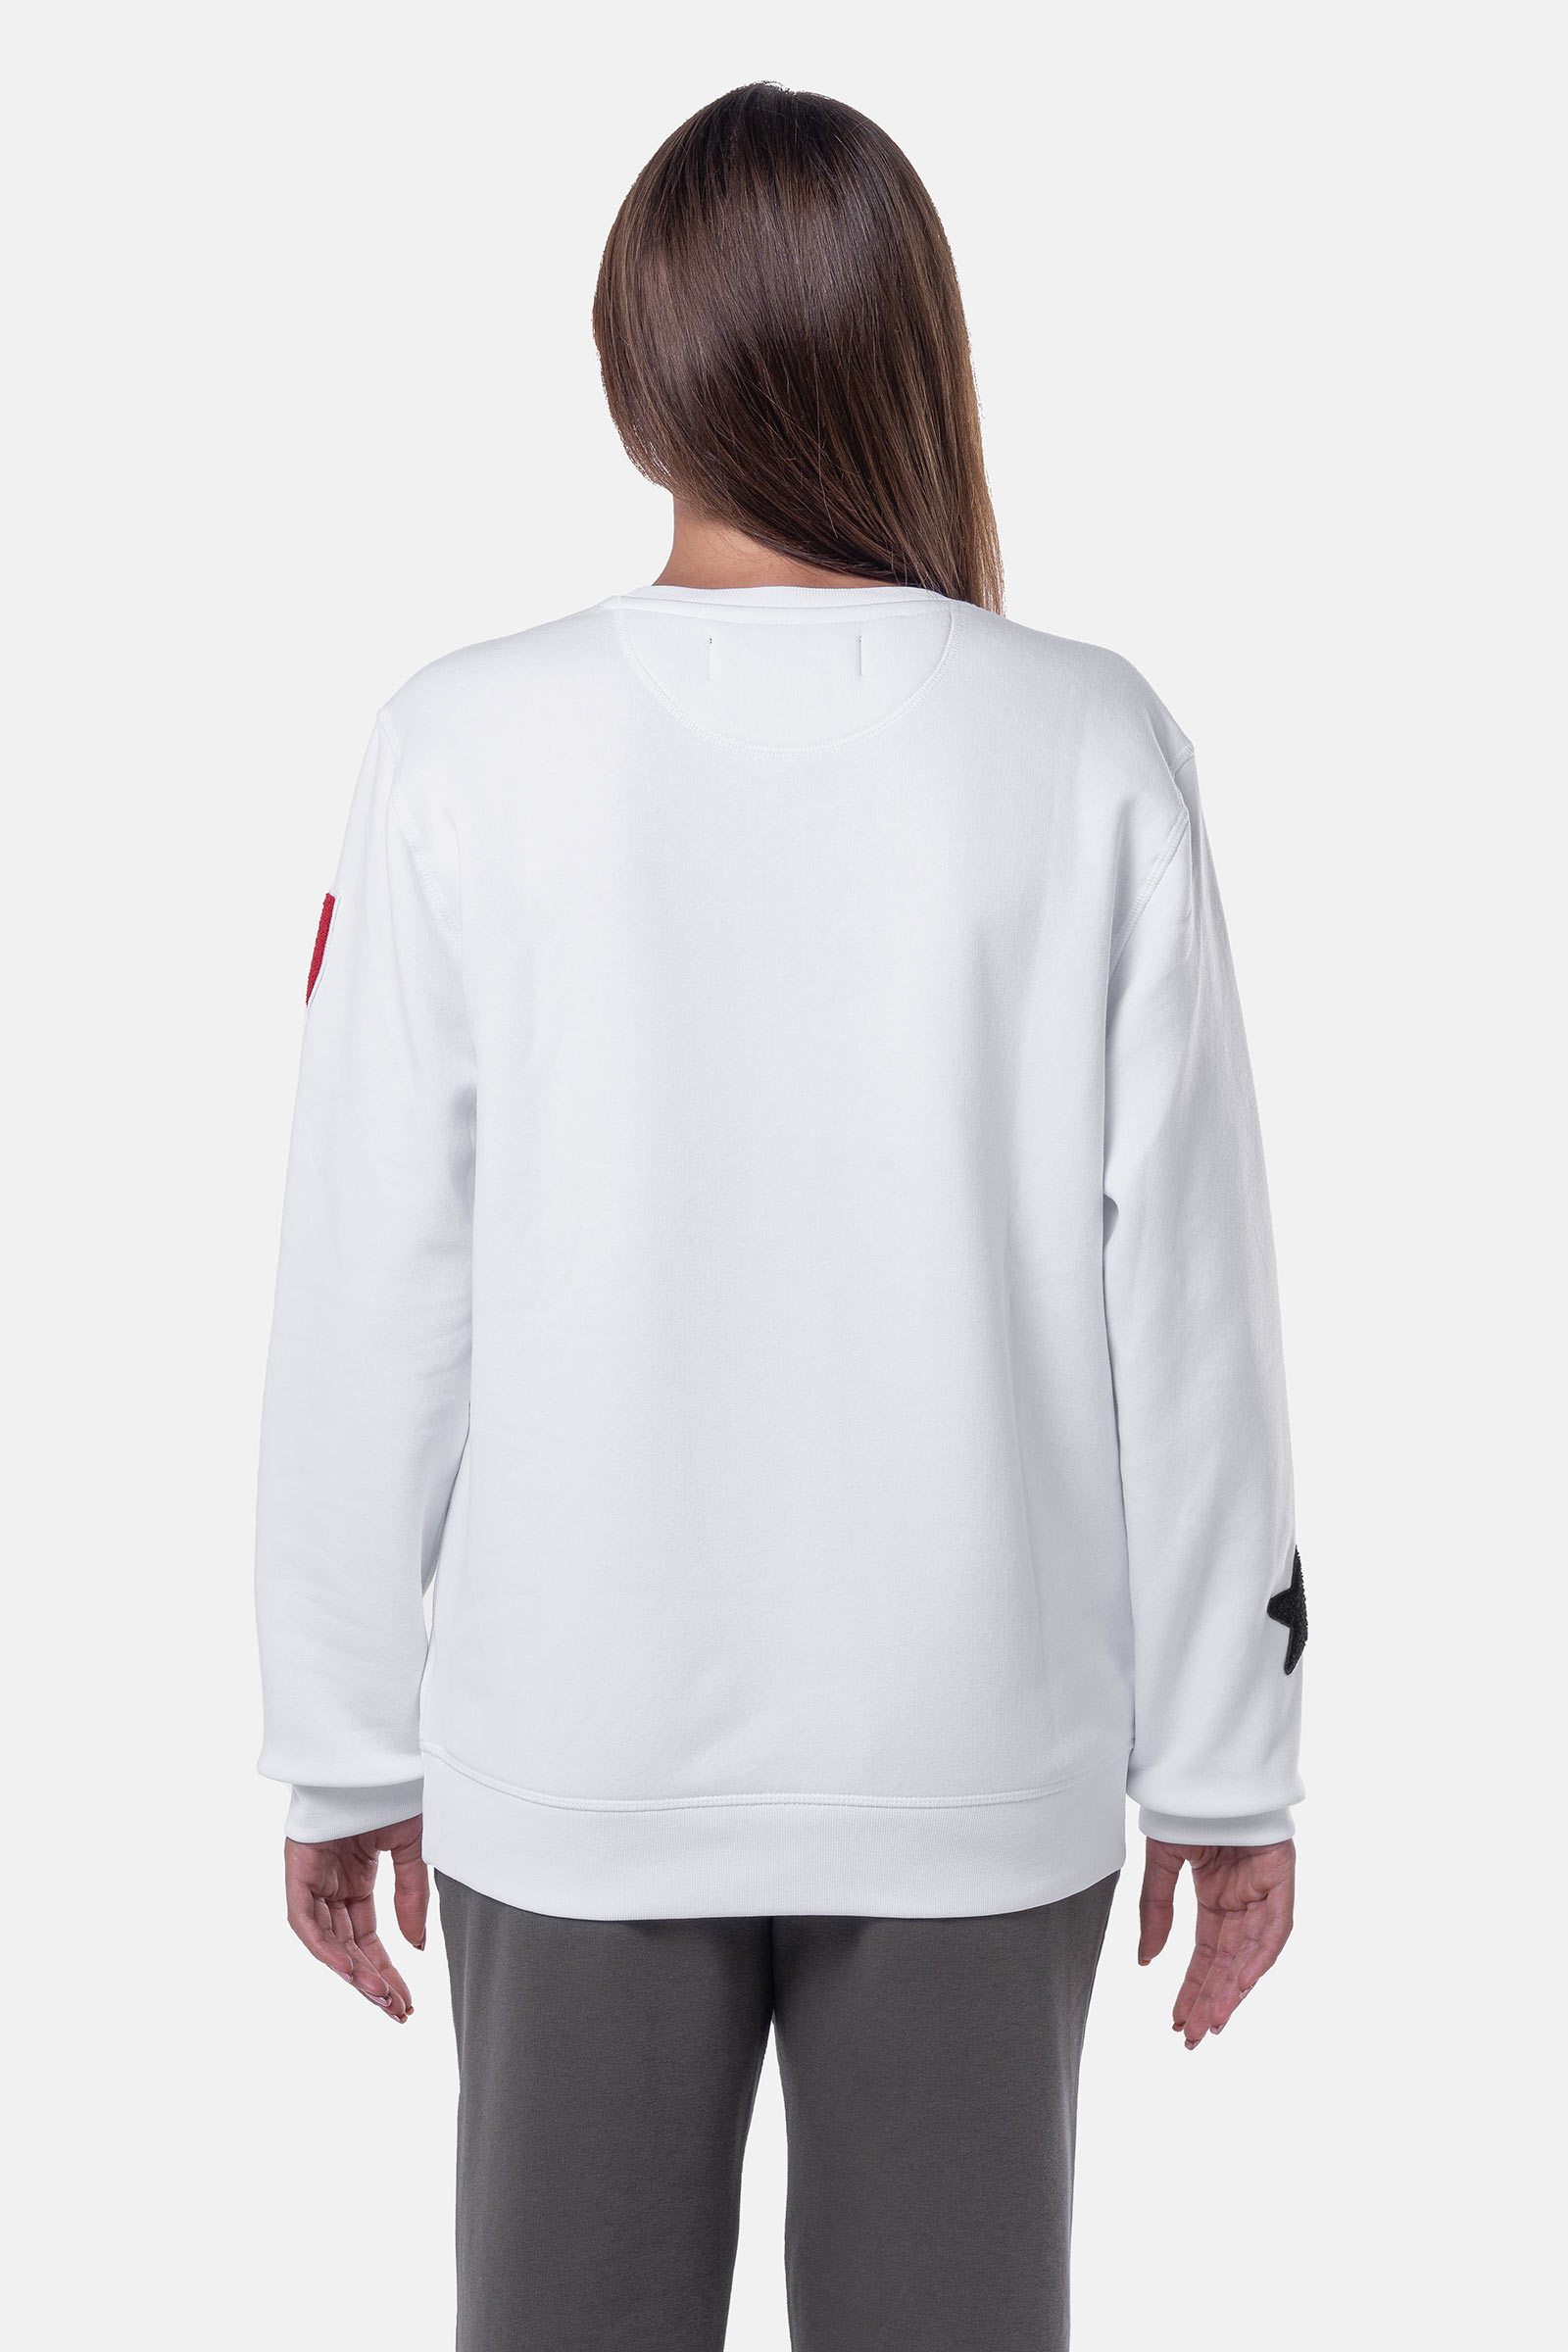 FELPA SCUDO - WHITE - Abbigliamento sportivo | Hydrogen